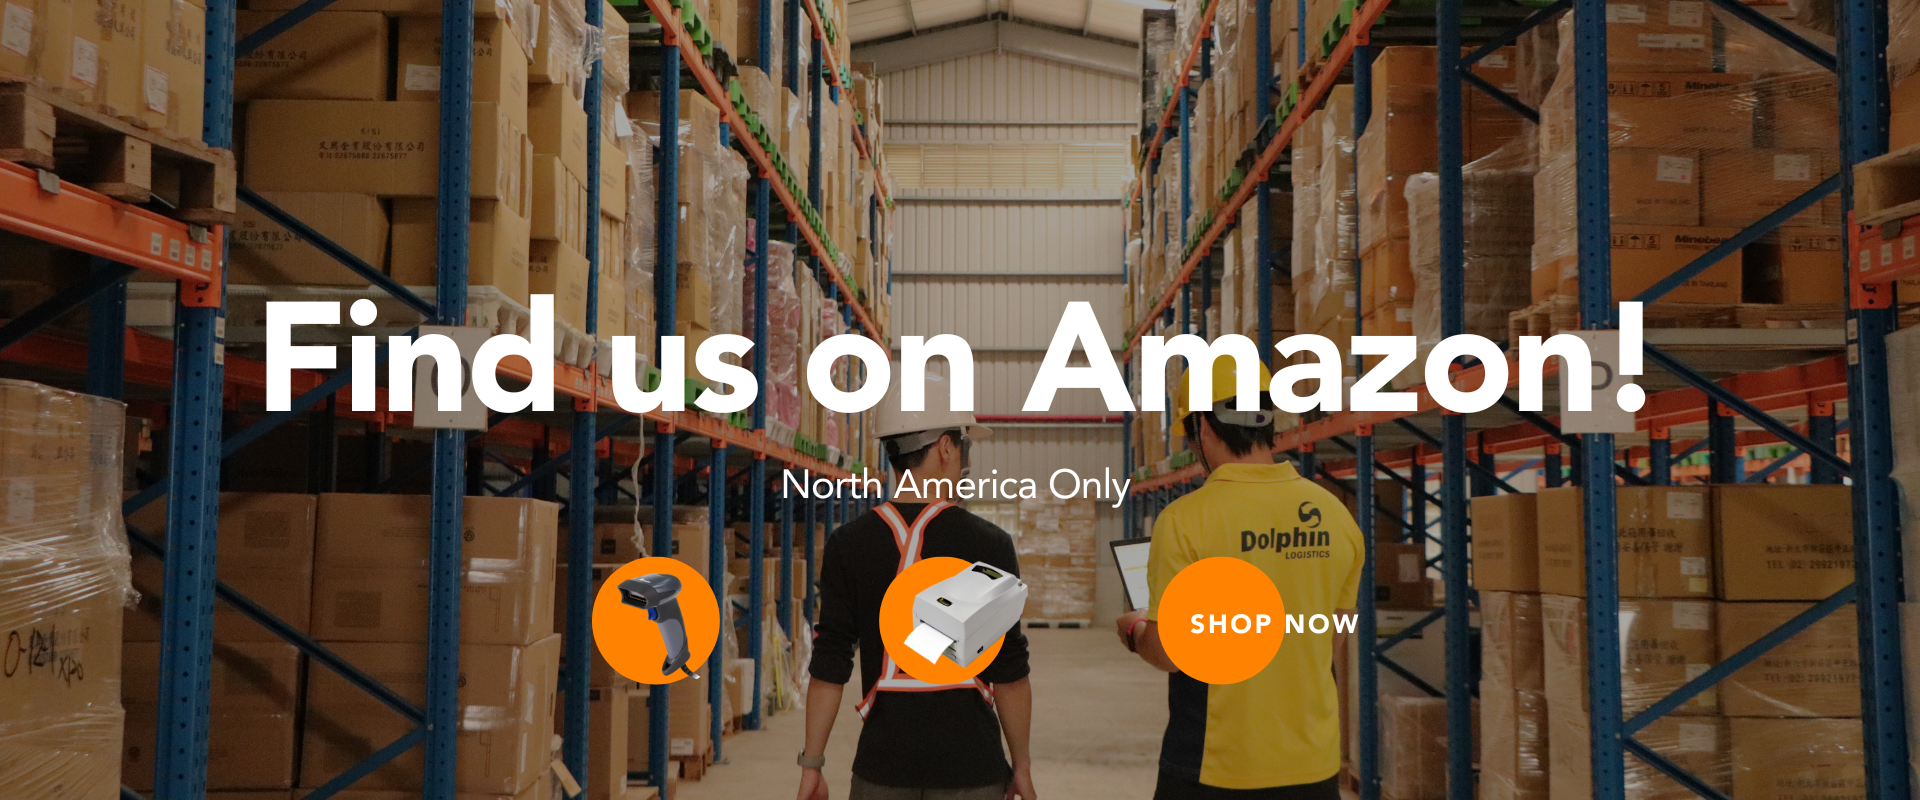 Find us on Amazon!